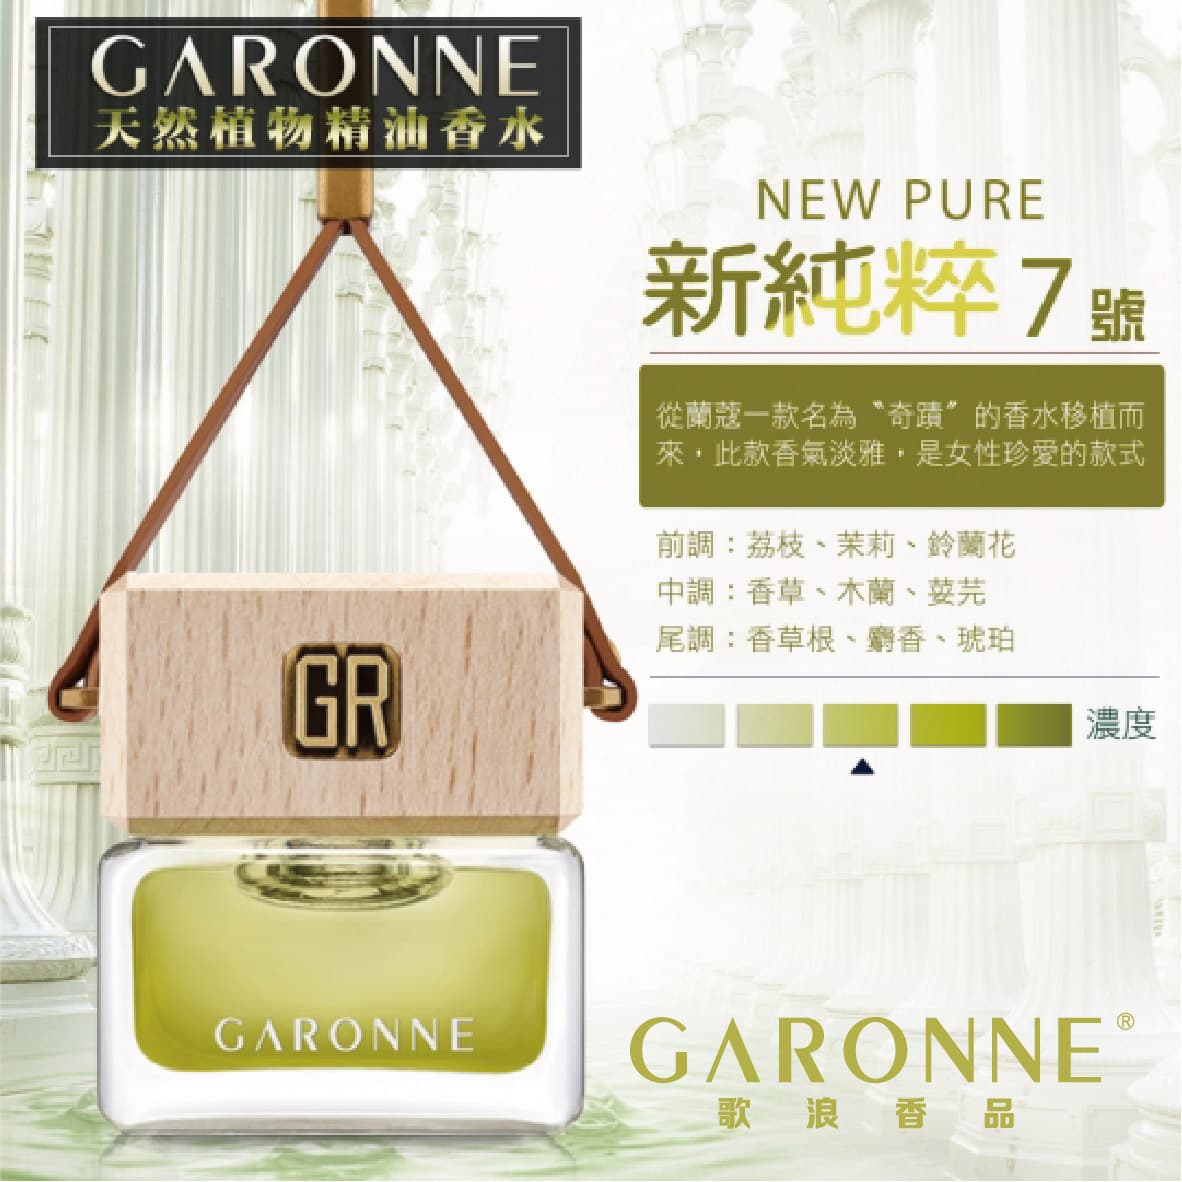 真便宜 GARONNE歌浪香品 法國吊式香水(7號-新純粹)6ml